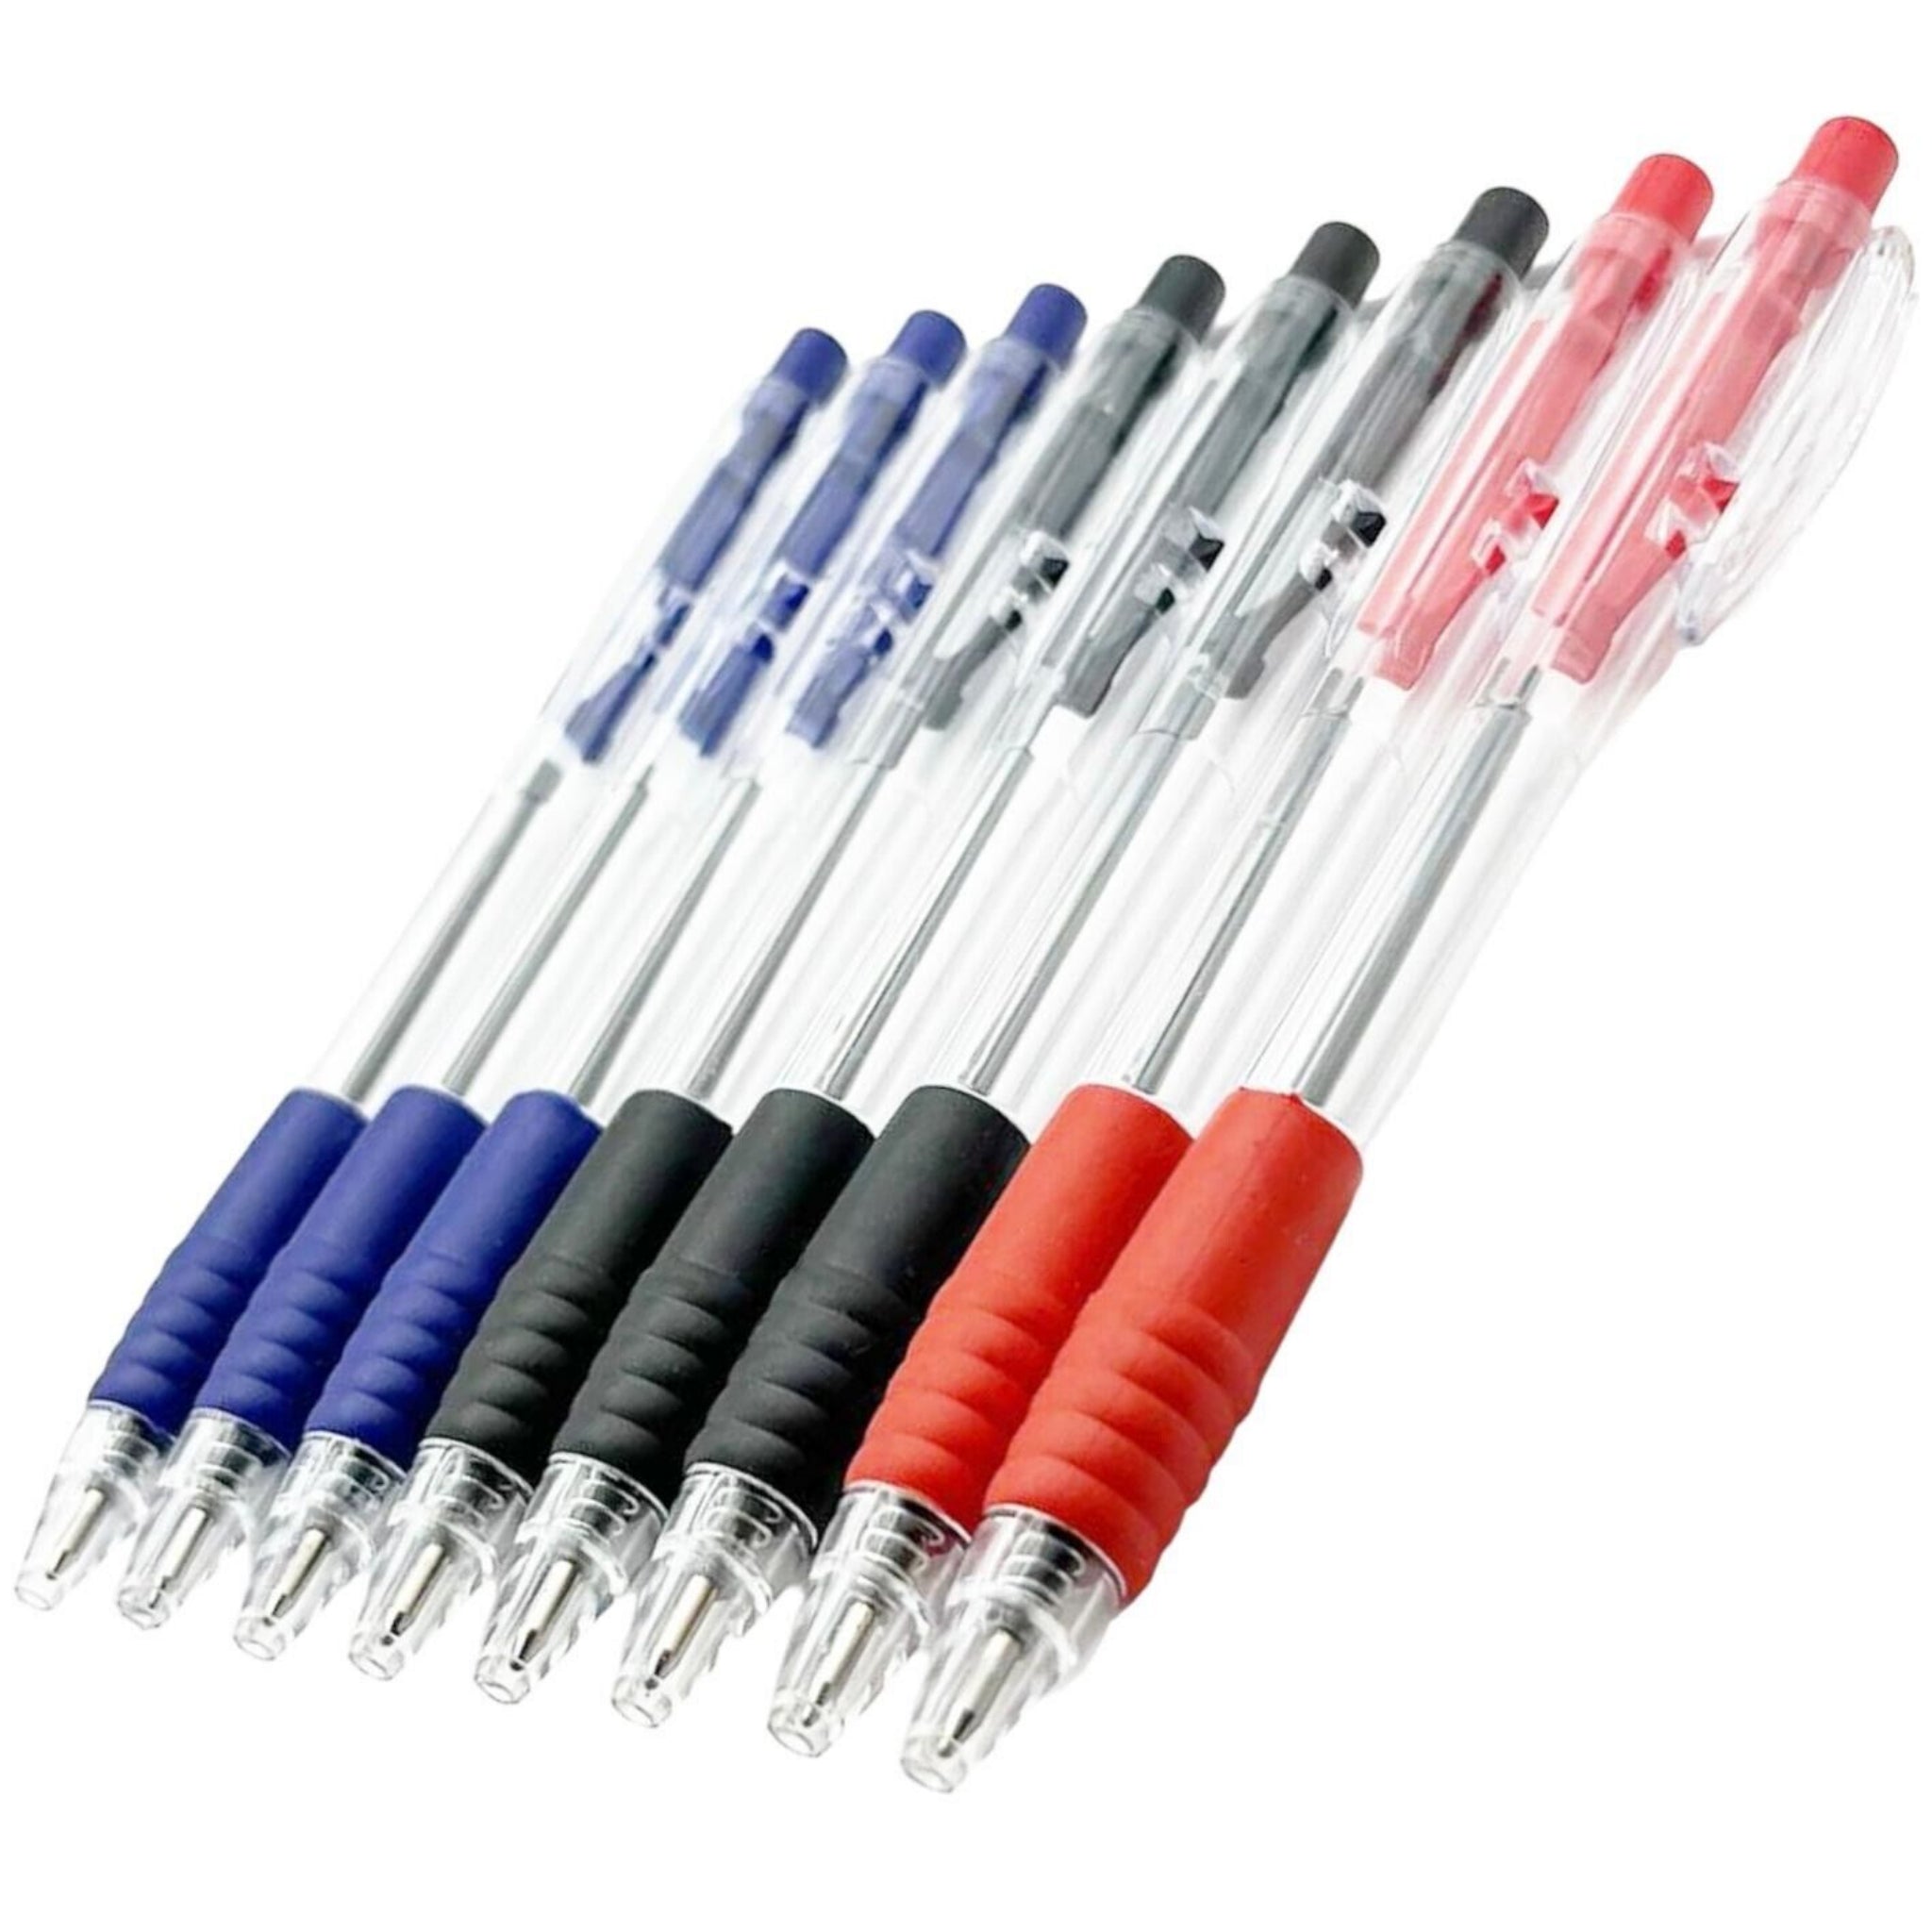 Beclen Harp 8 Ballpoint Pens Set High Quality Soft Non-Slip Grip Medium Ball Point Pen Biros